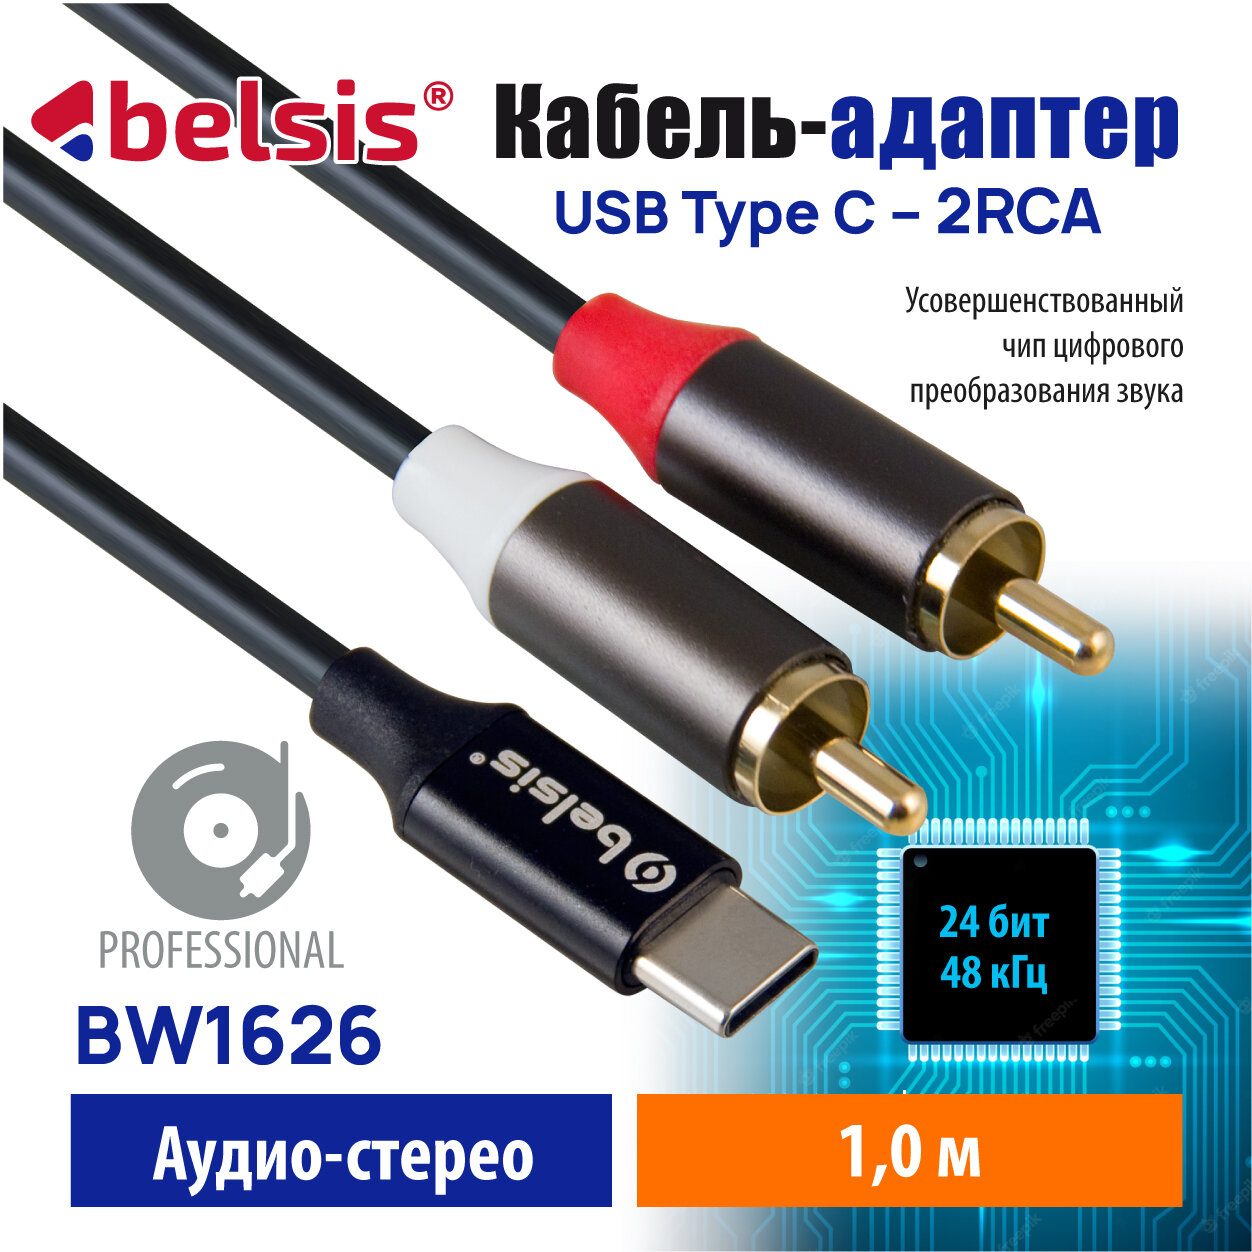 Кабель USB Type C 2RCA 24 бит /48 кГц. Аудио Стерео Belsis совместим с саундбоксом AV ресивером Микшером Car Audio и др